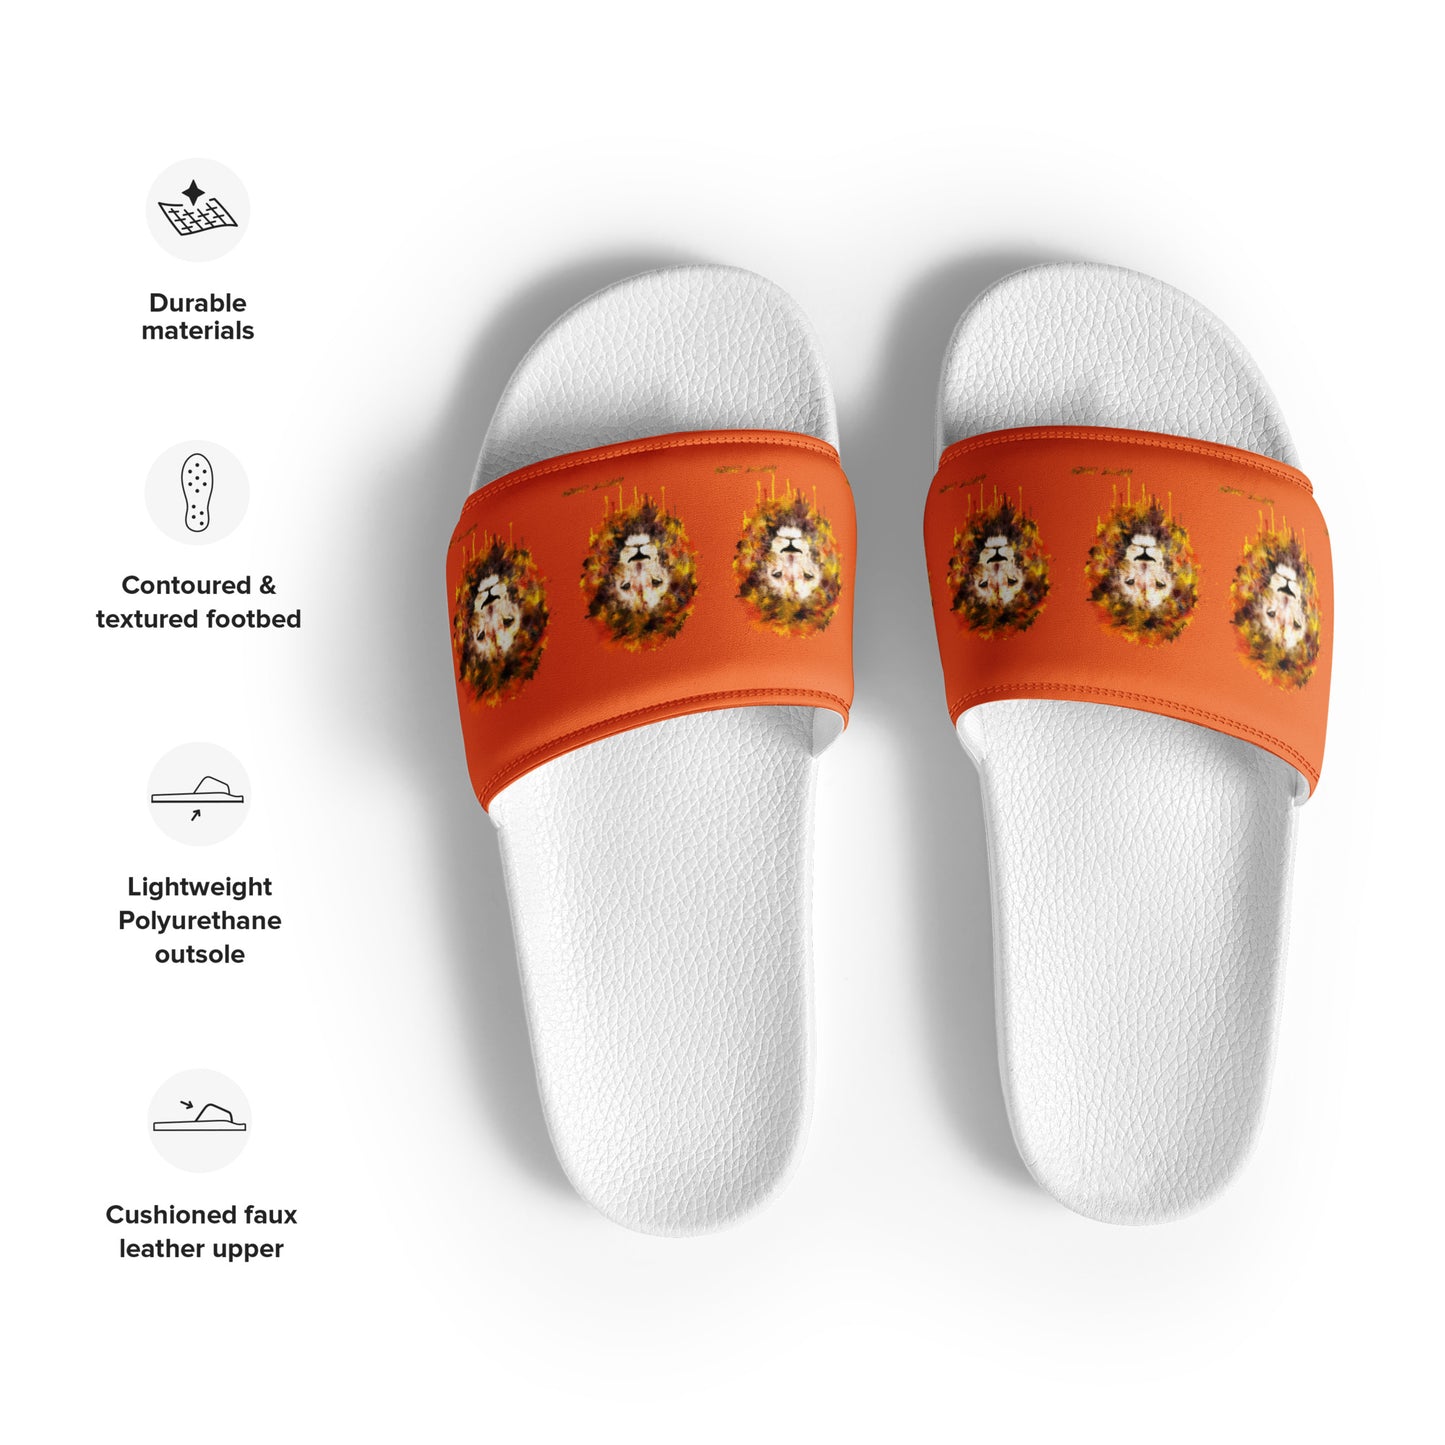 Orange Women's Slides